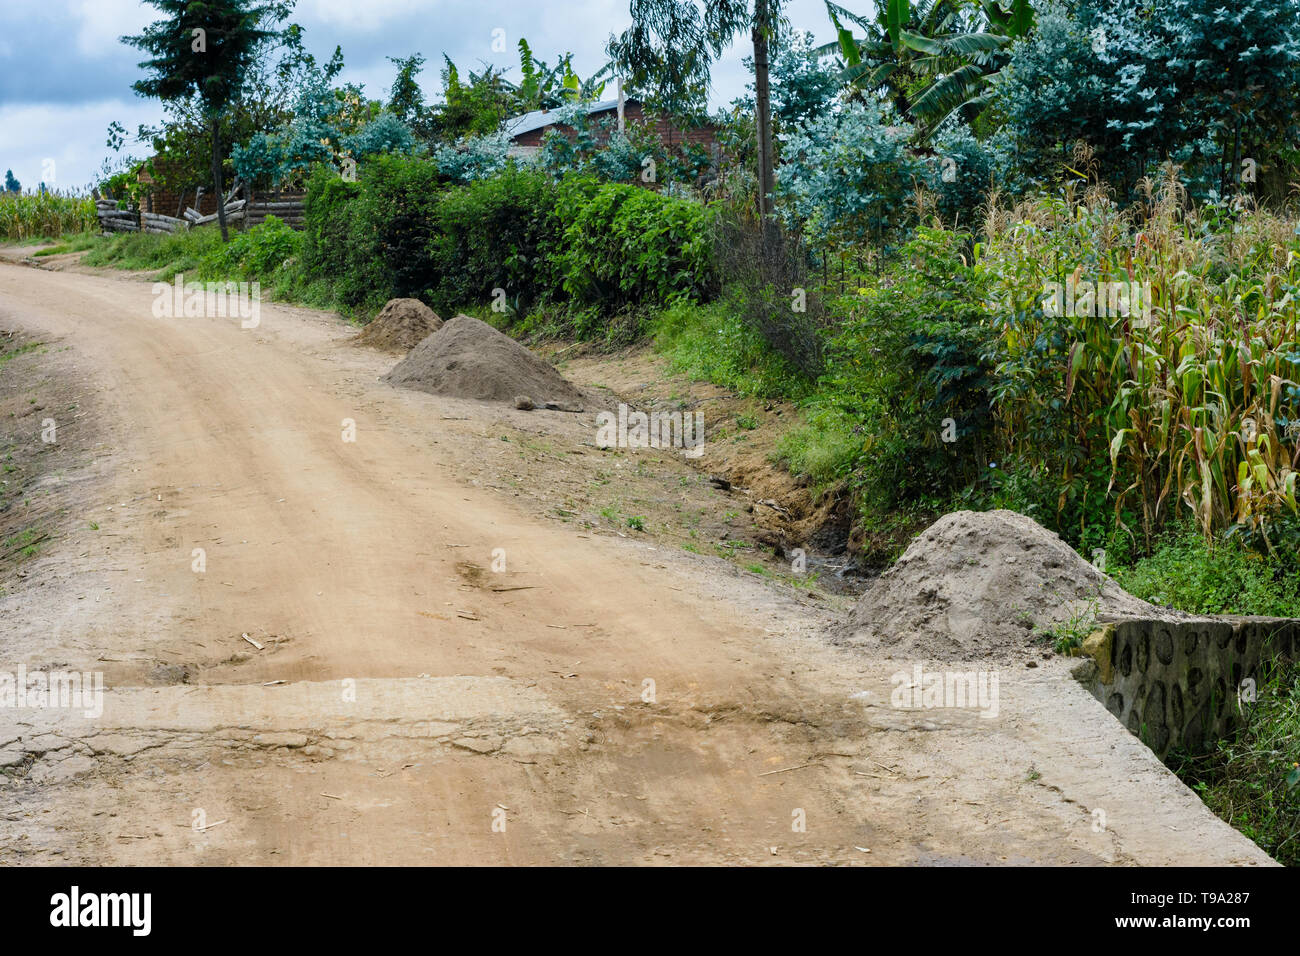 Le sable de construction creusée d'une rivière et entassé dans des piles pour la vente pour la construction sur le bord d'une route de terre dans un village du Malawi Banque D'Images